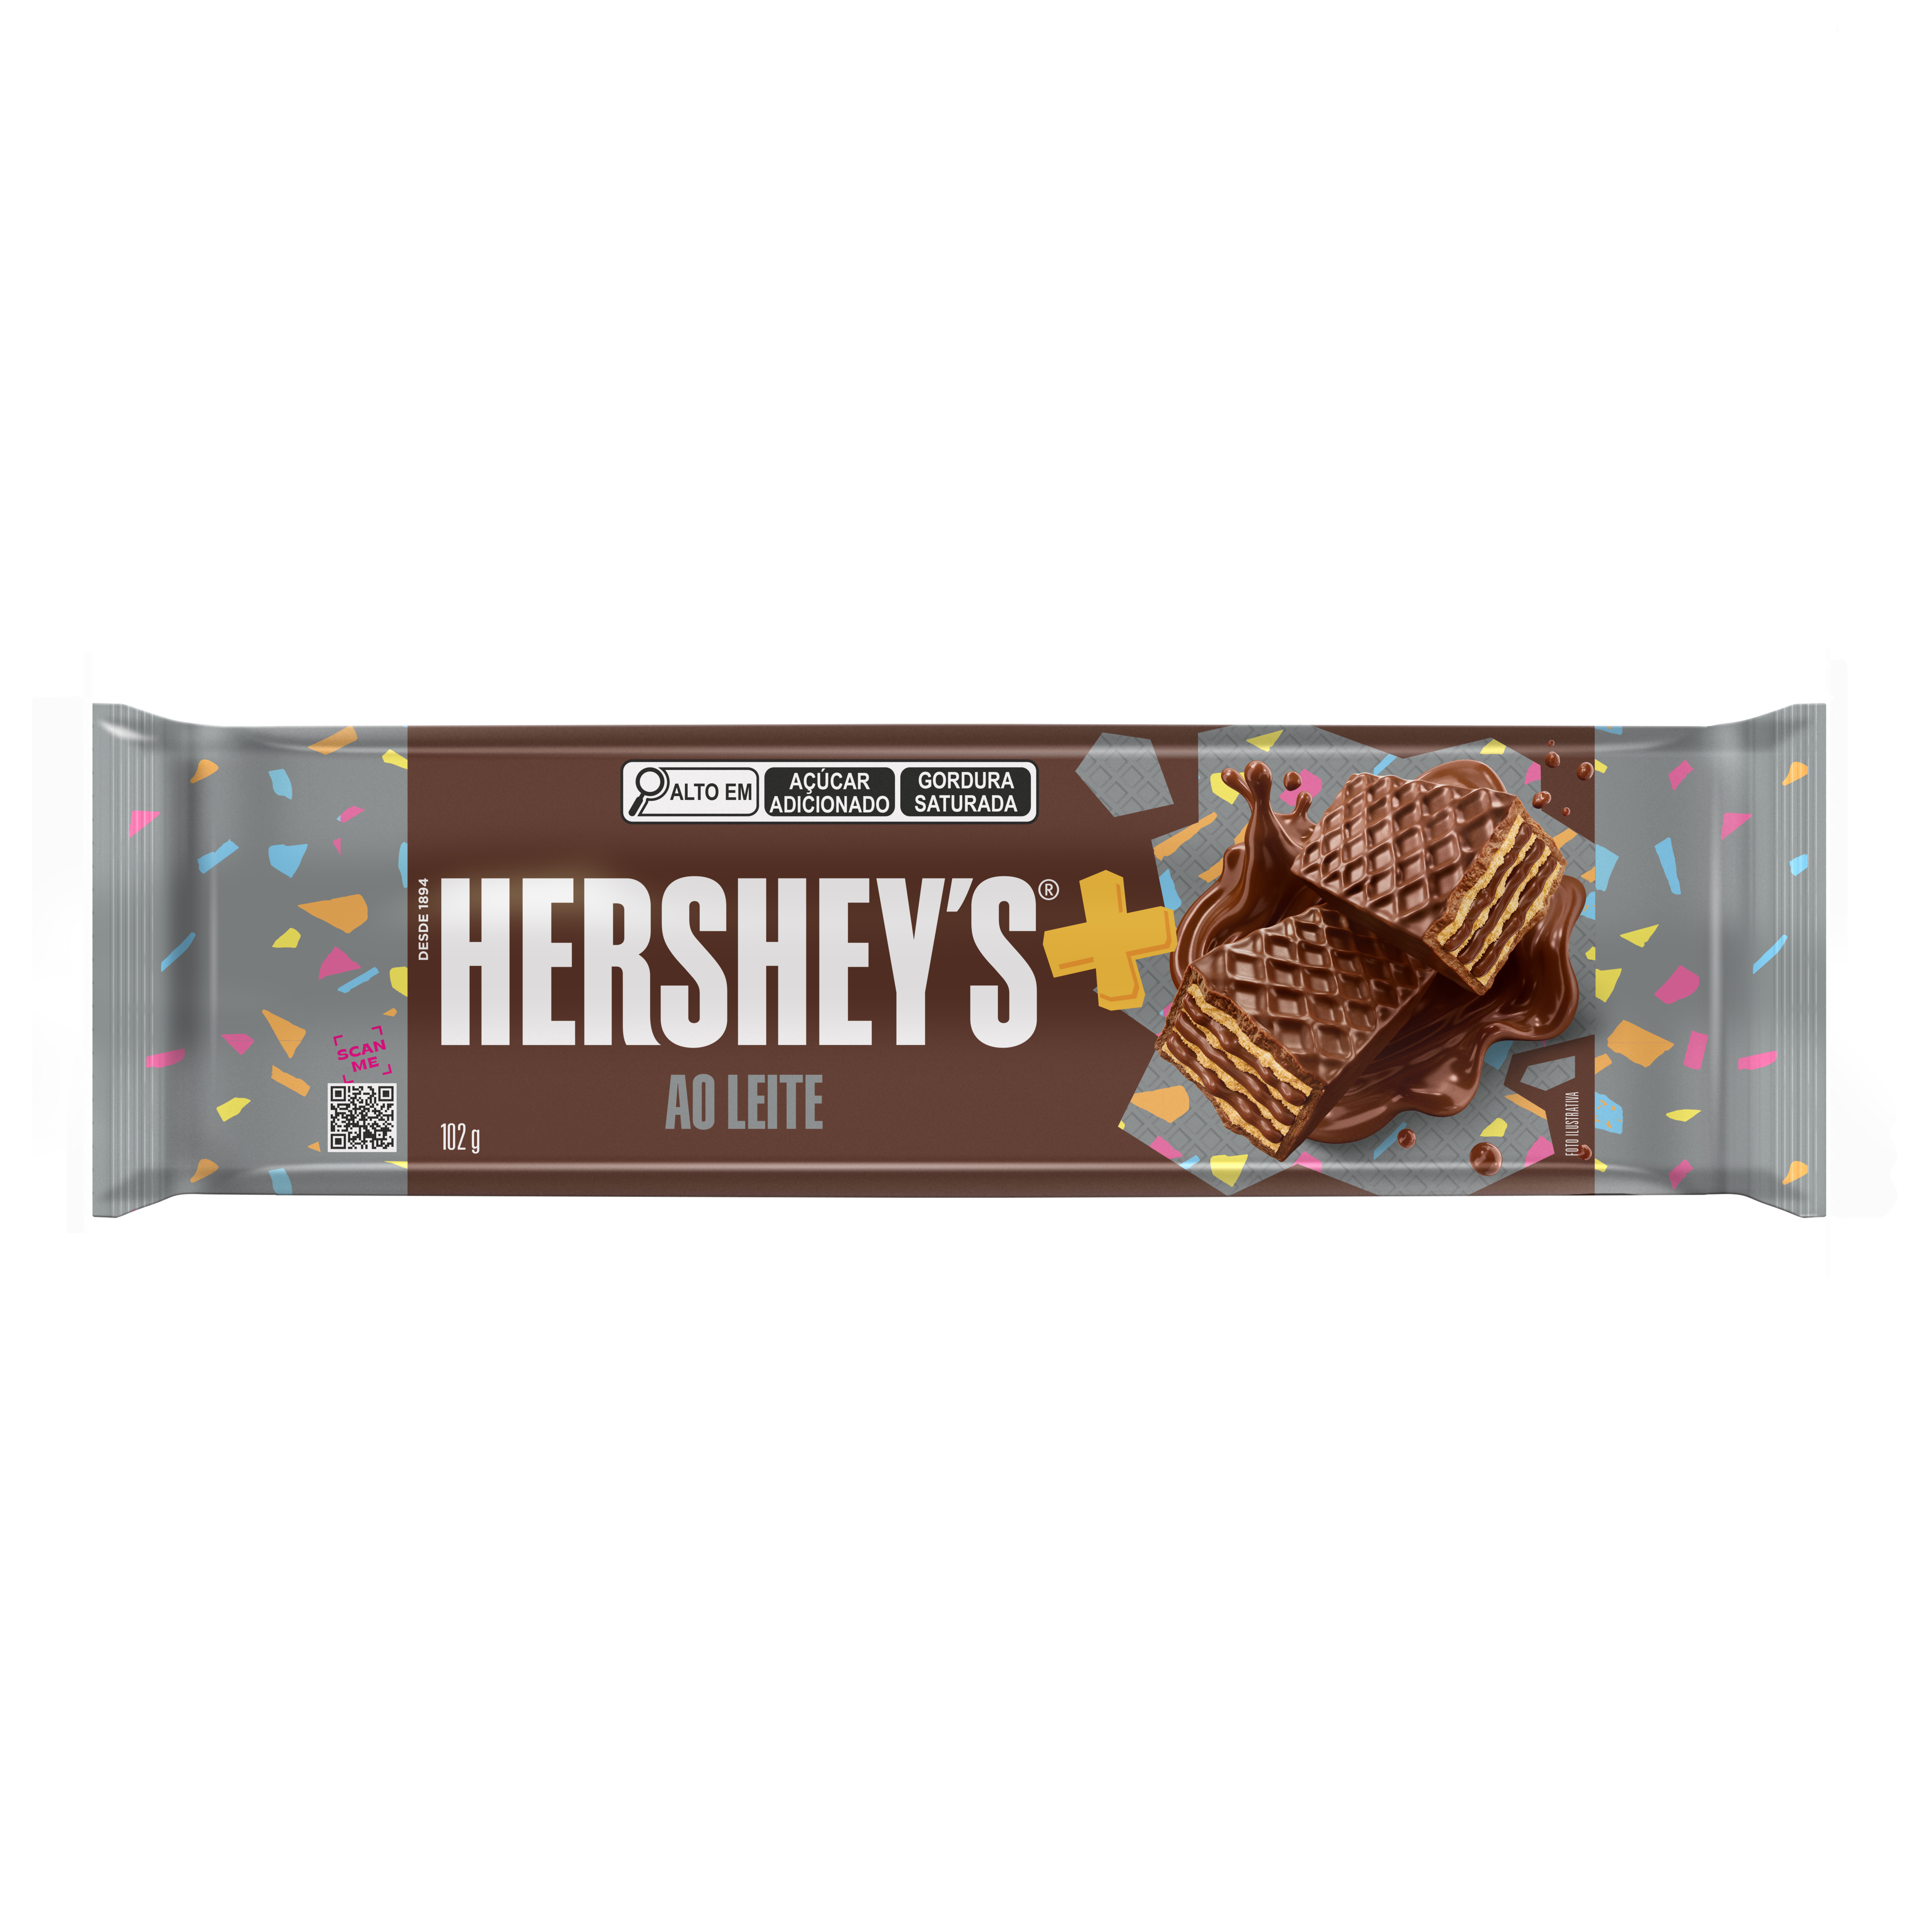 Oferta de Chocolate Hersheys Mais Ao Leite 102g por R$4,39 em Arena Atacado